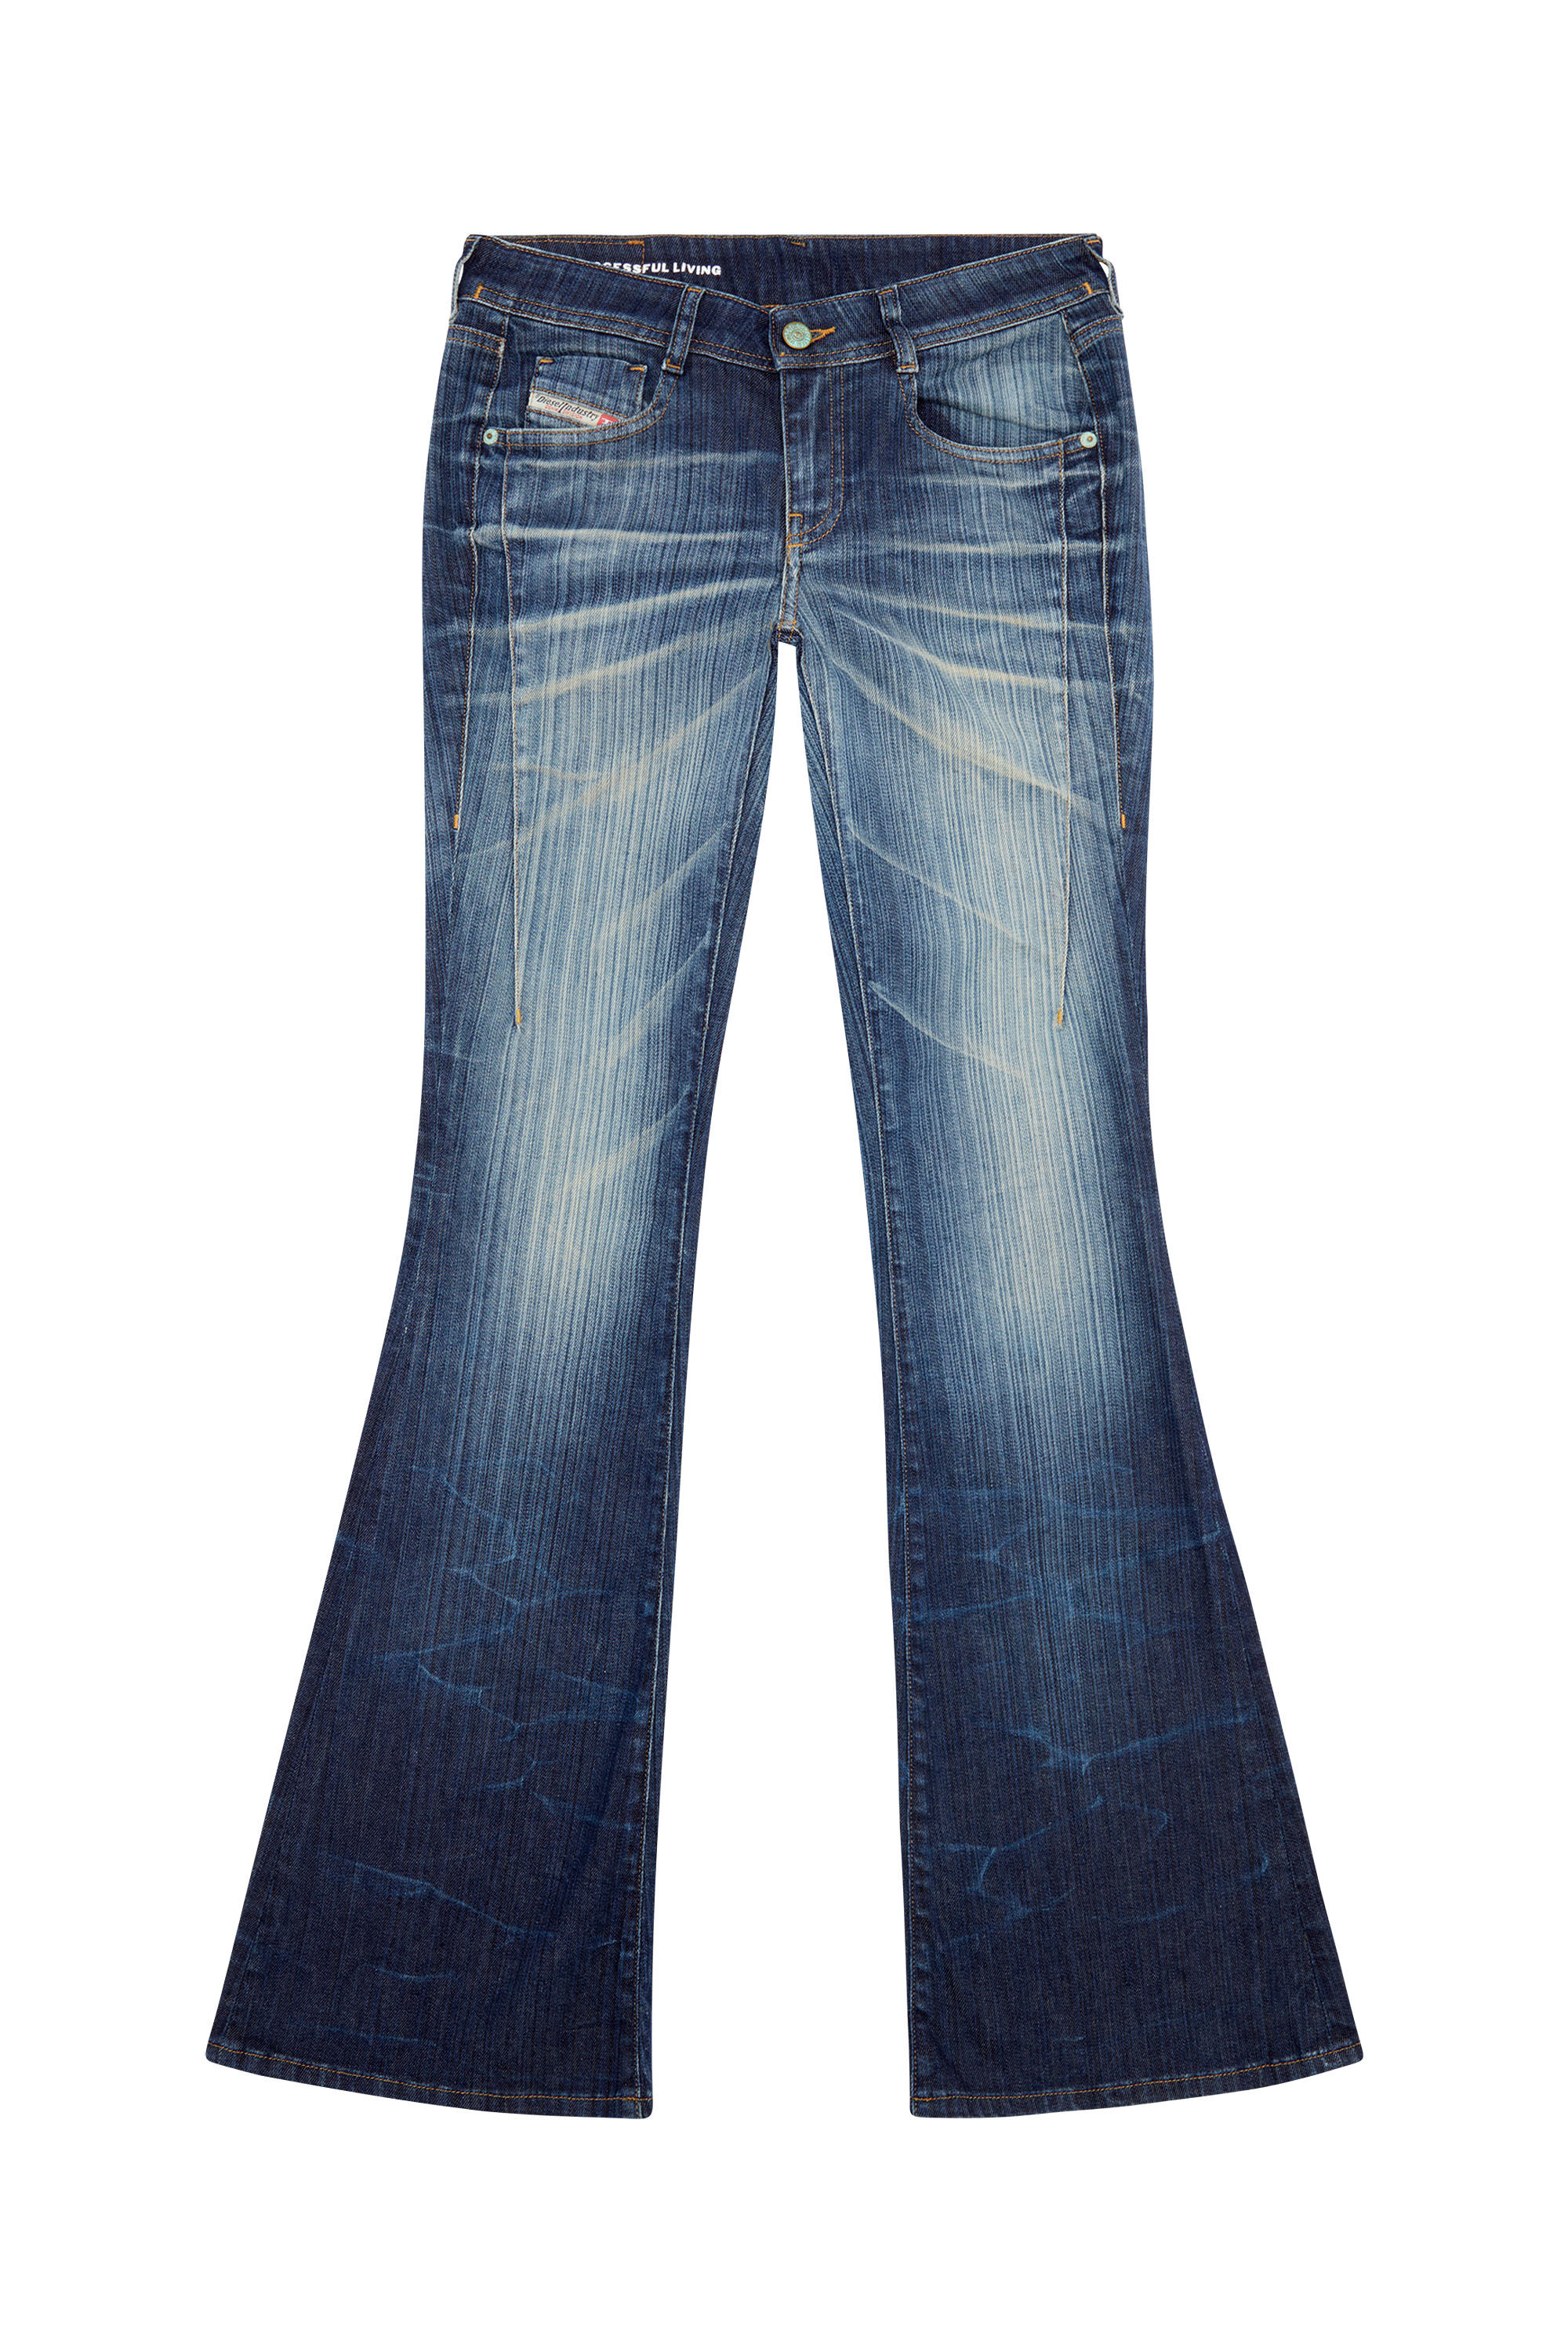 ブーツカットフレア Jeans - 1969 D-Ebbey | ダークブルー 